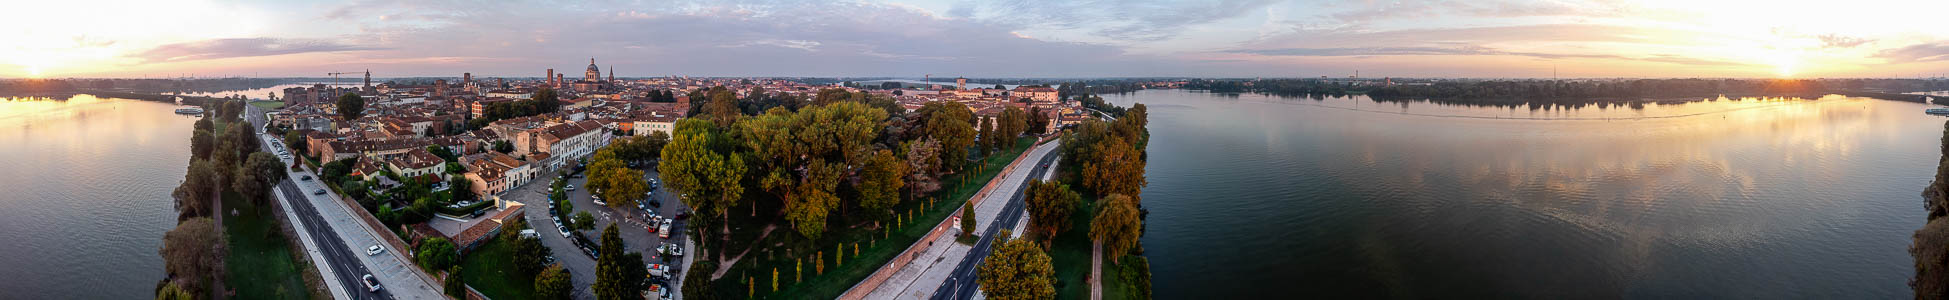 Centro storico, Lago di Mezzo (Mincio) Mantua